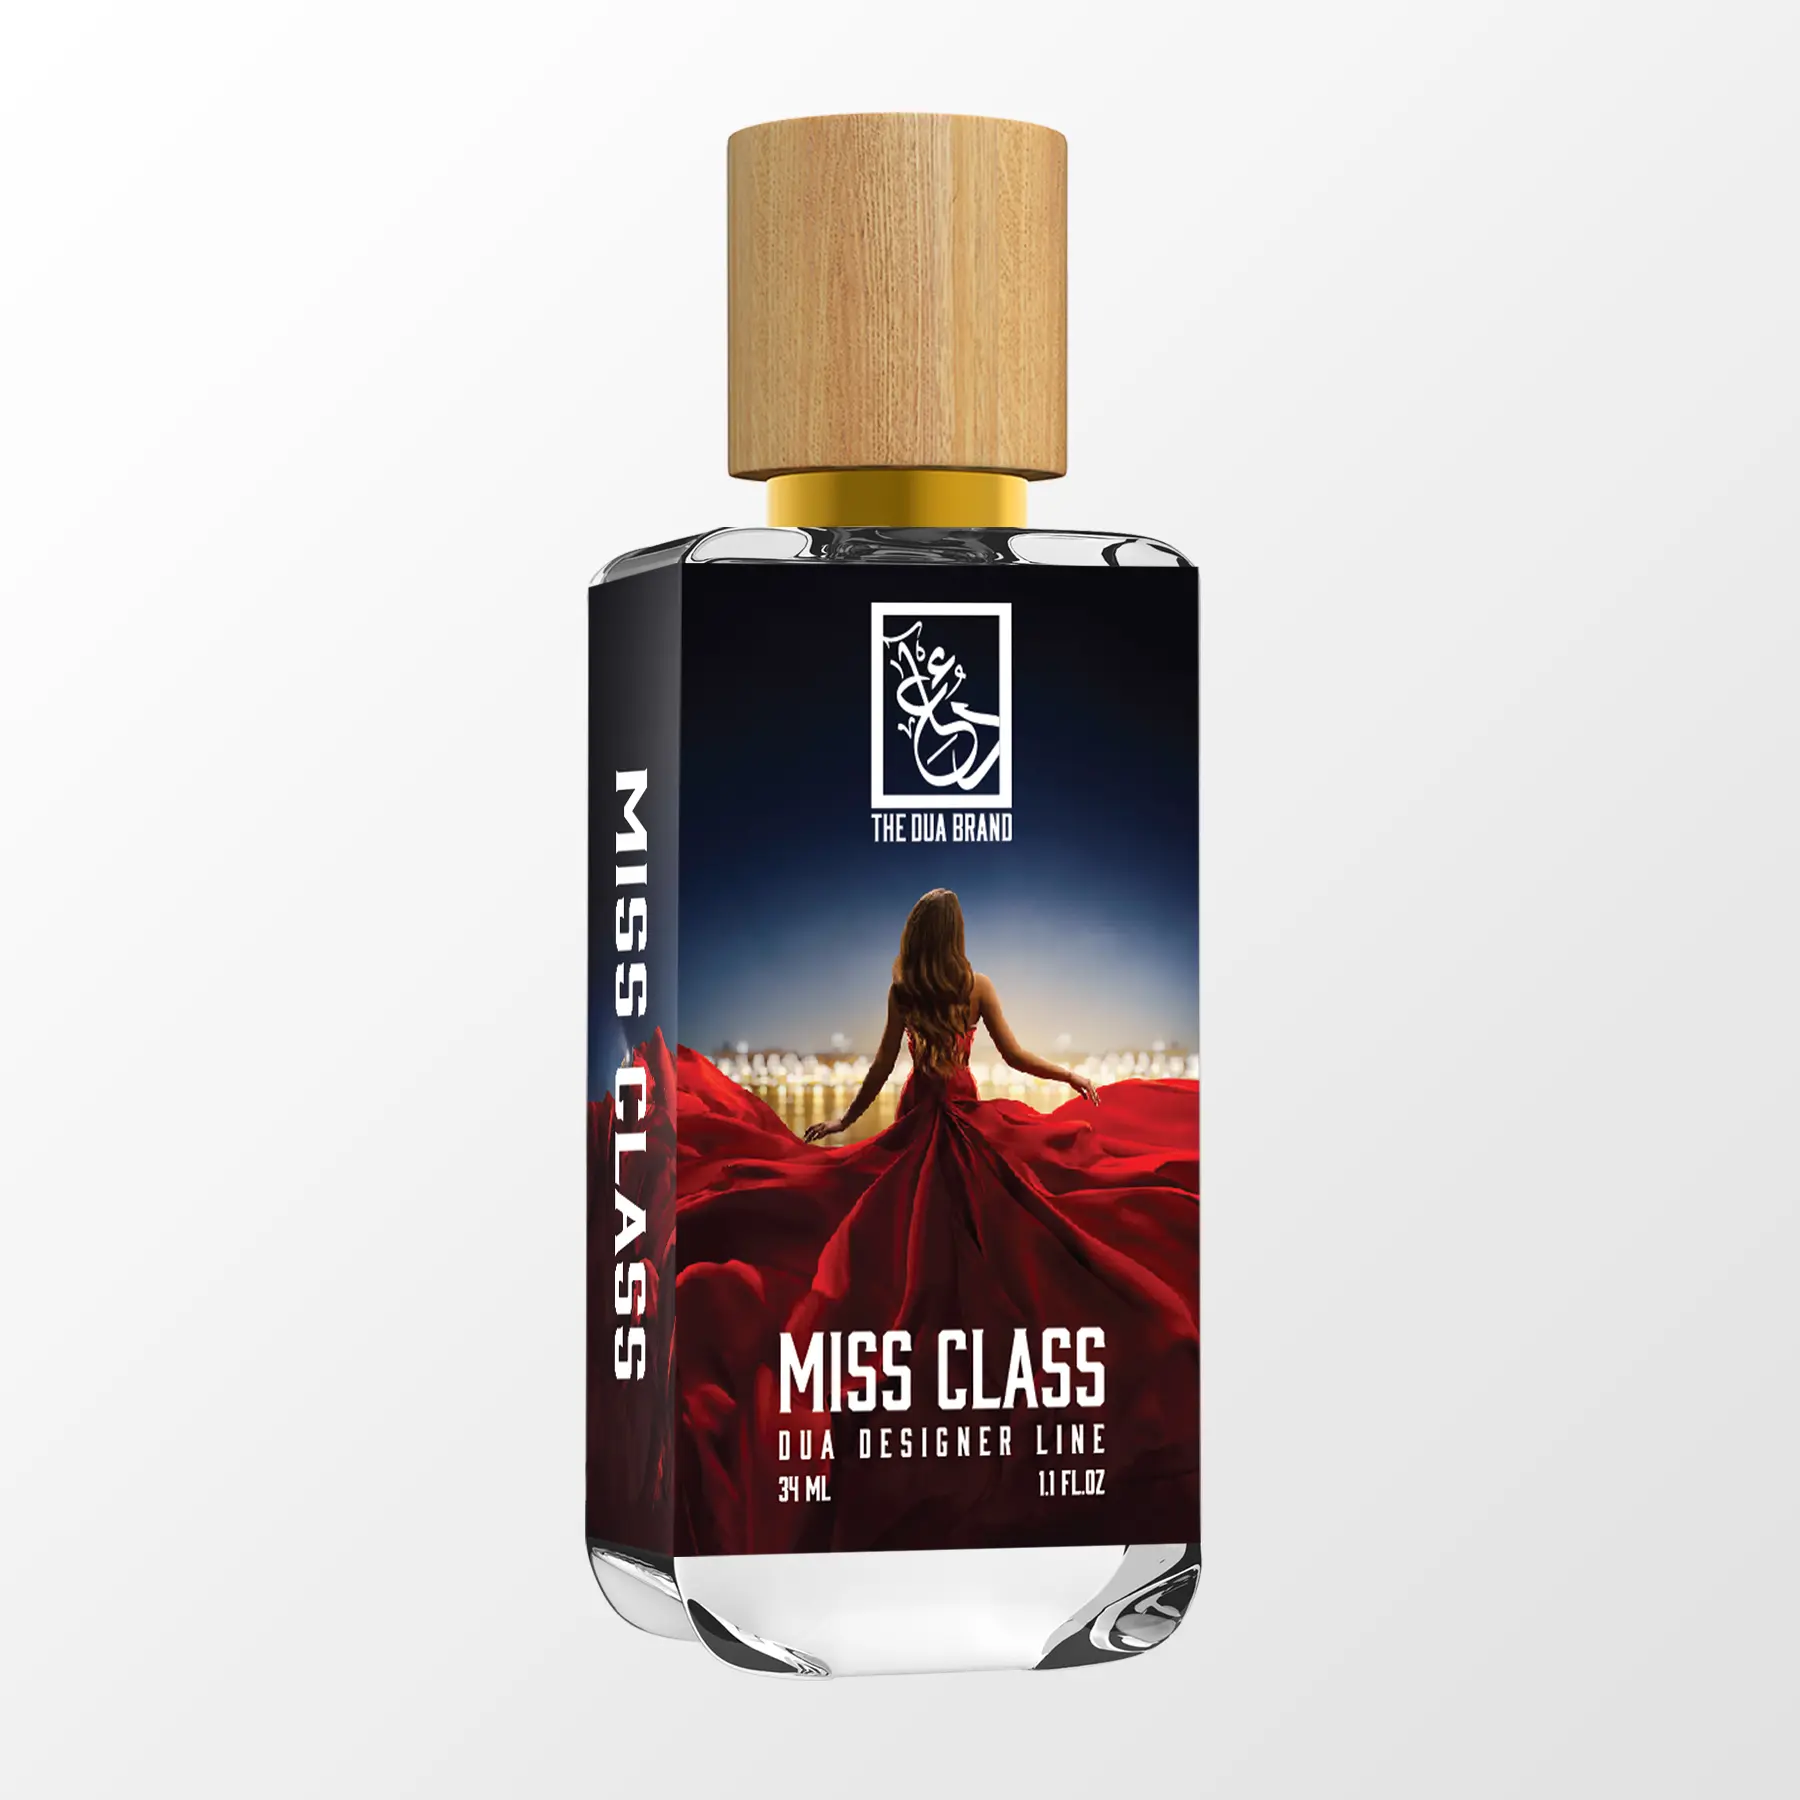 7) Miss Class - The Dua Brand